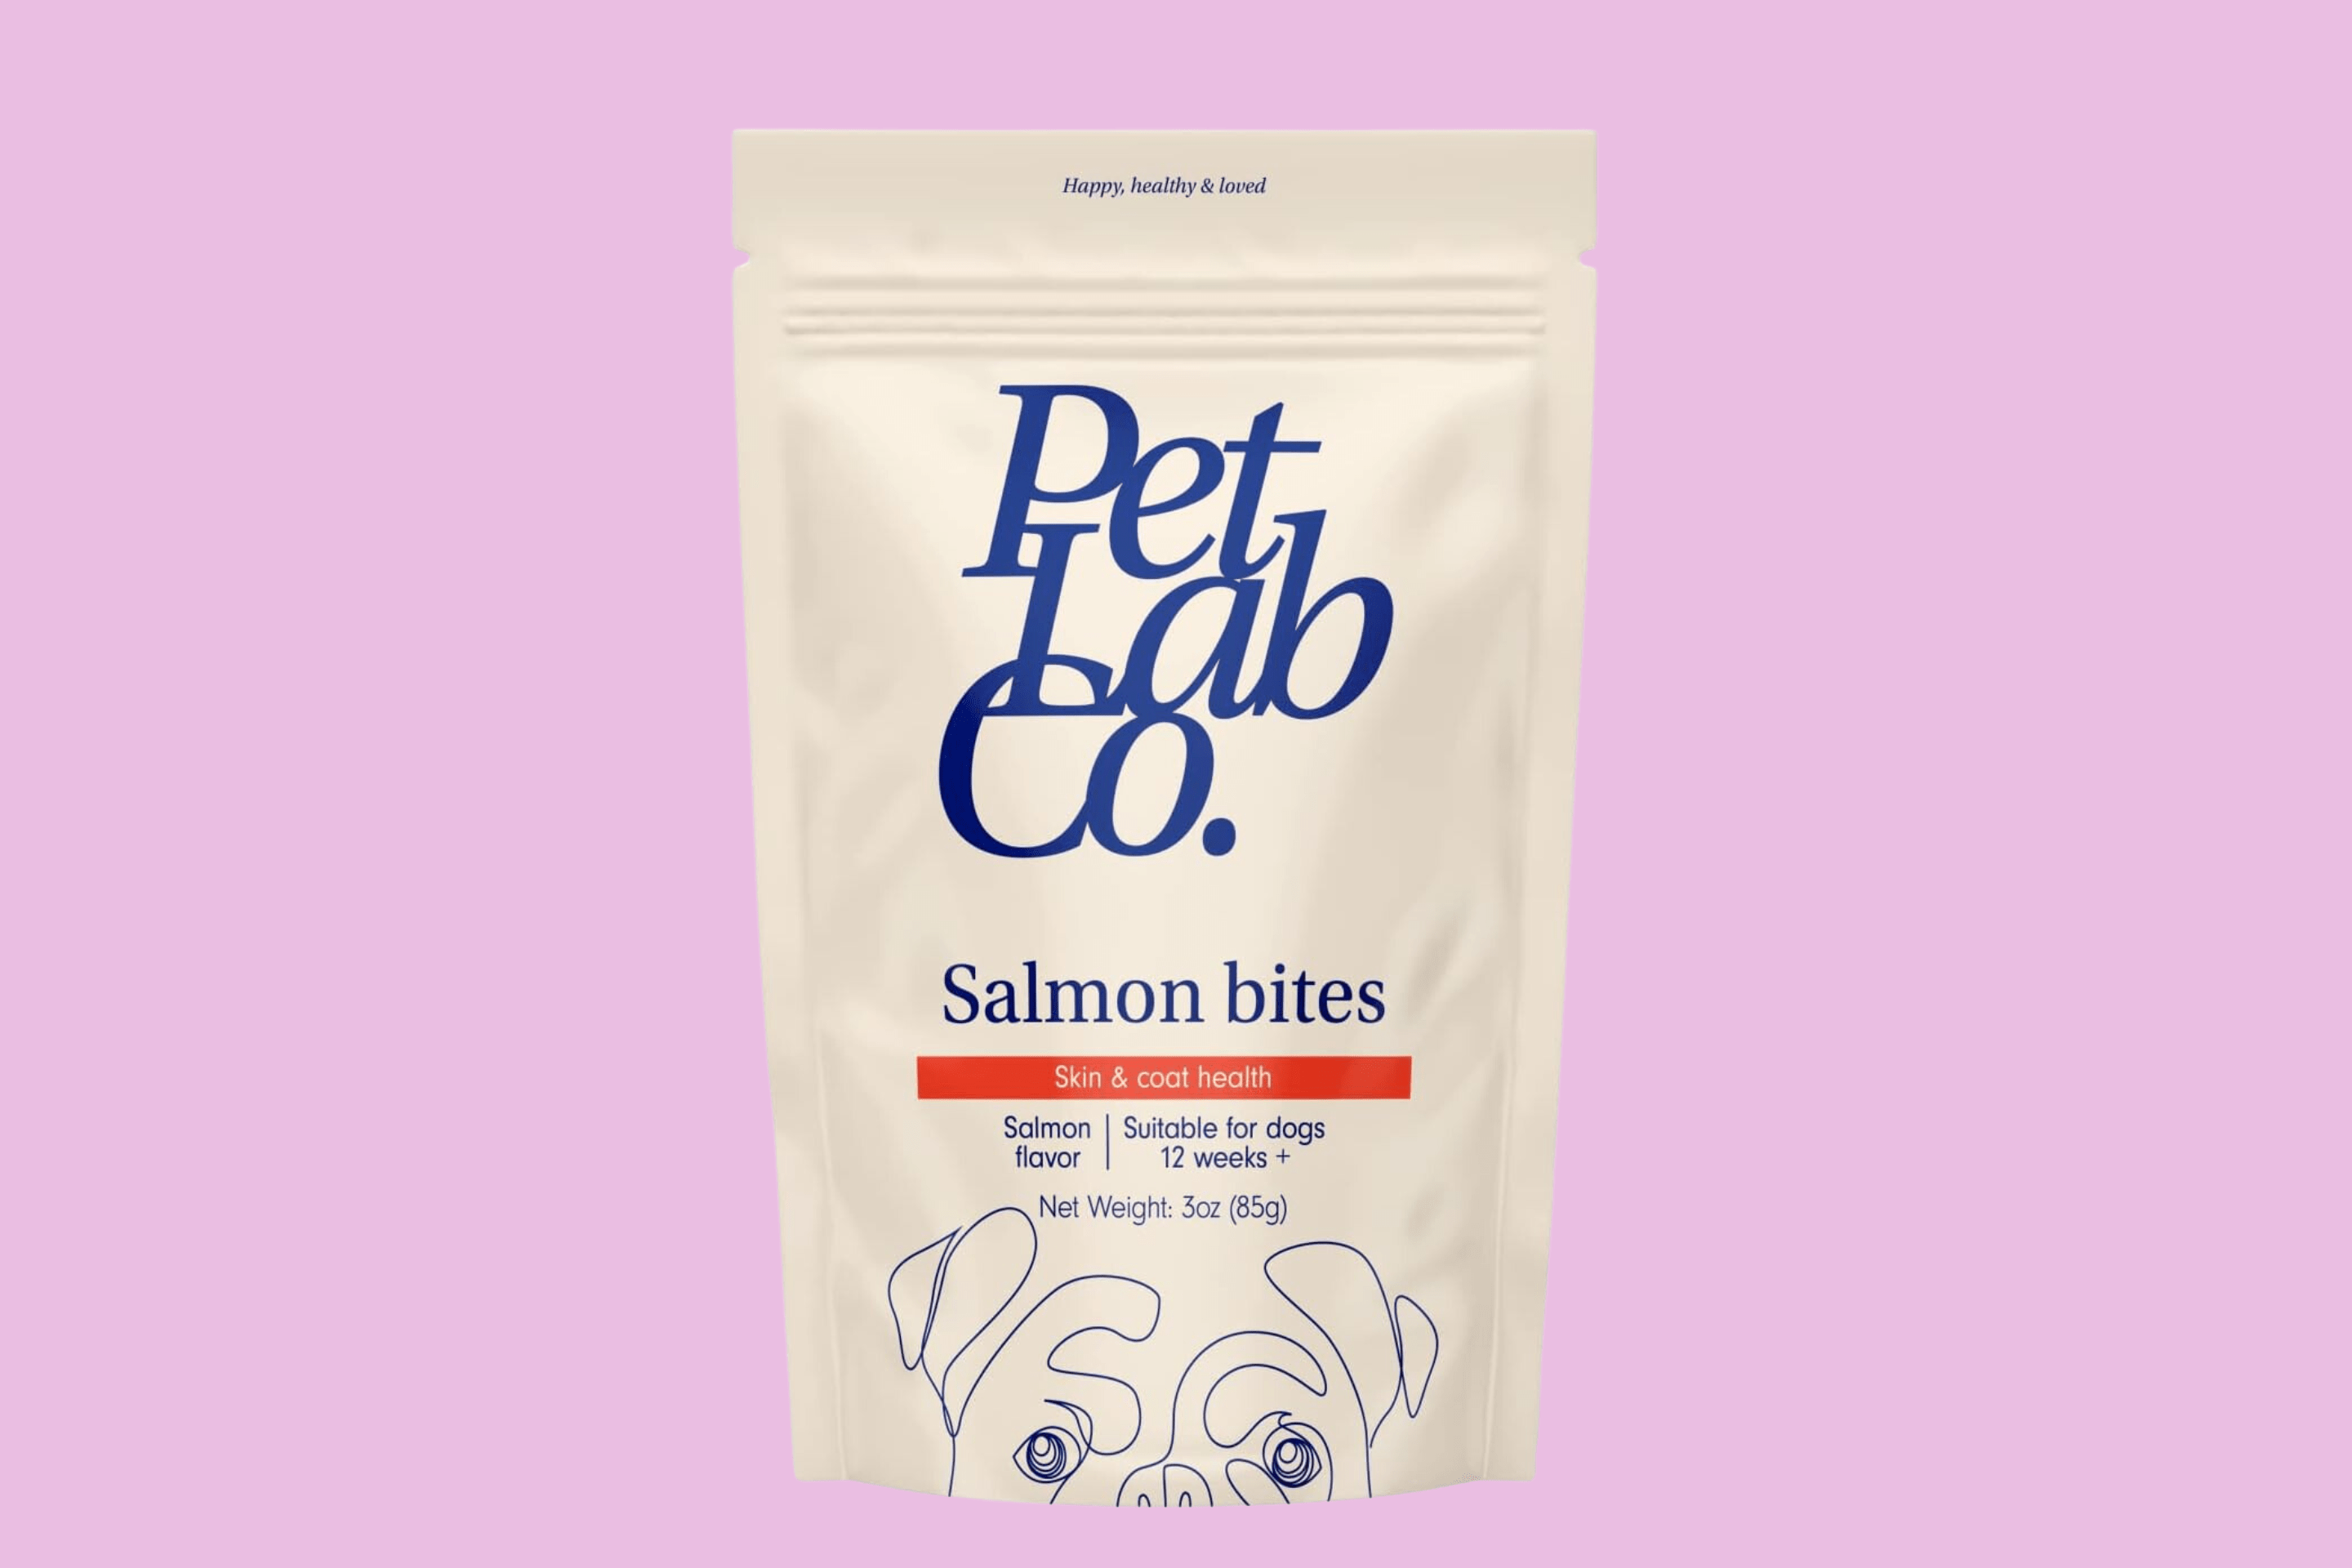 Petlab Co. Salmon Bites